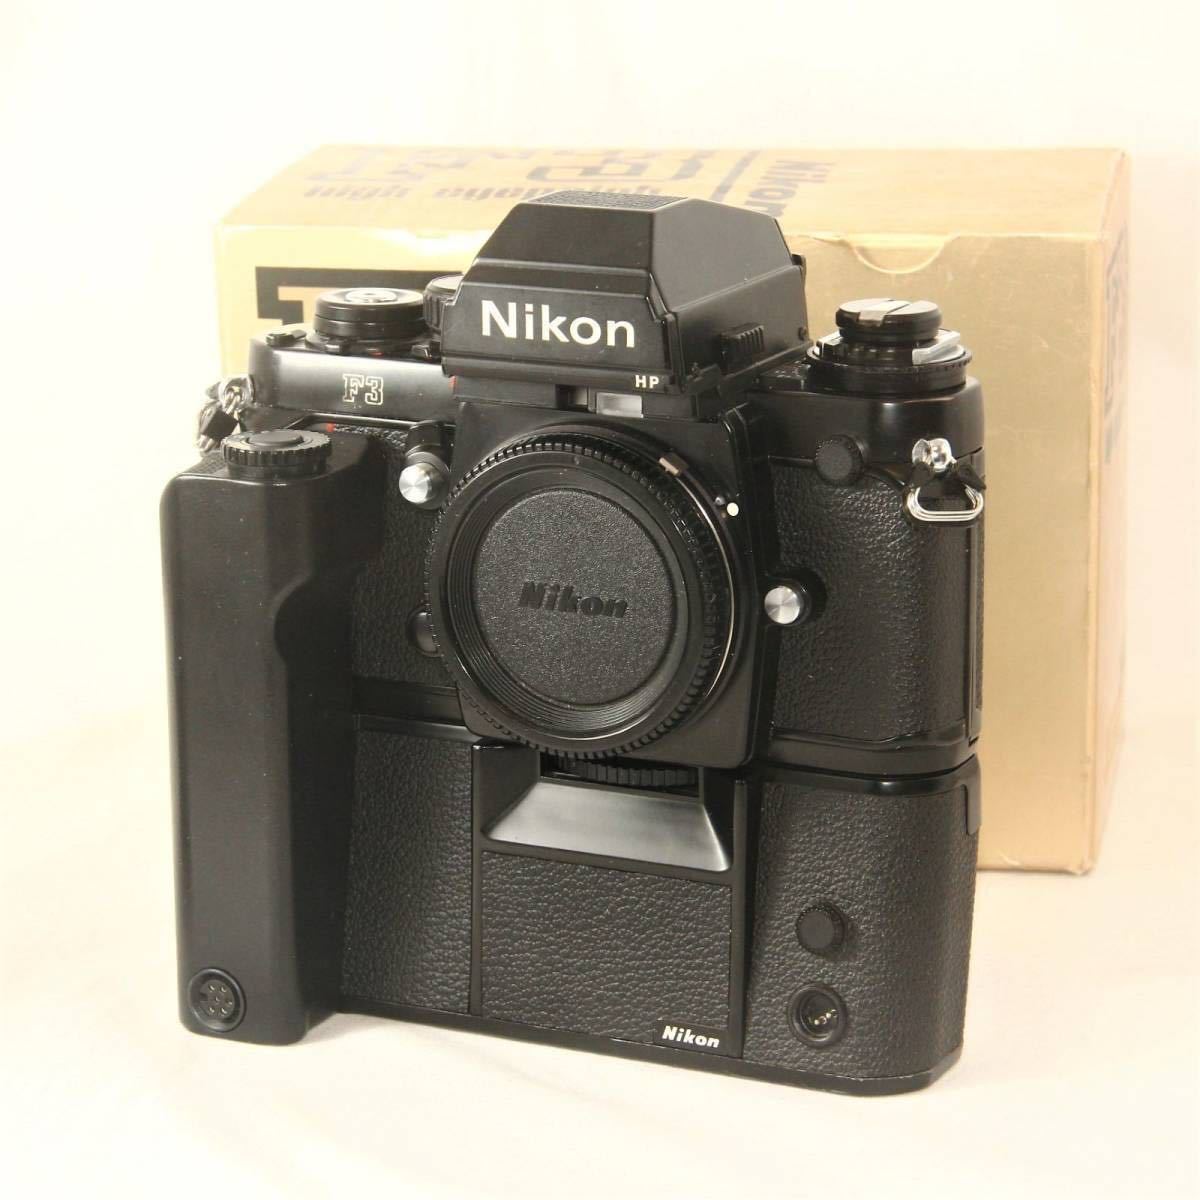 Nikon ニコン F3 HP ボディ + MD-4 美品 フィルム一眼レフ 153万番台 